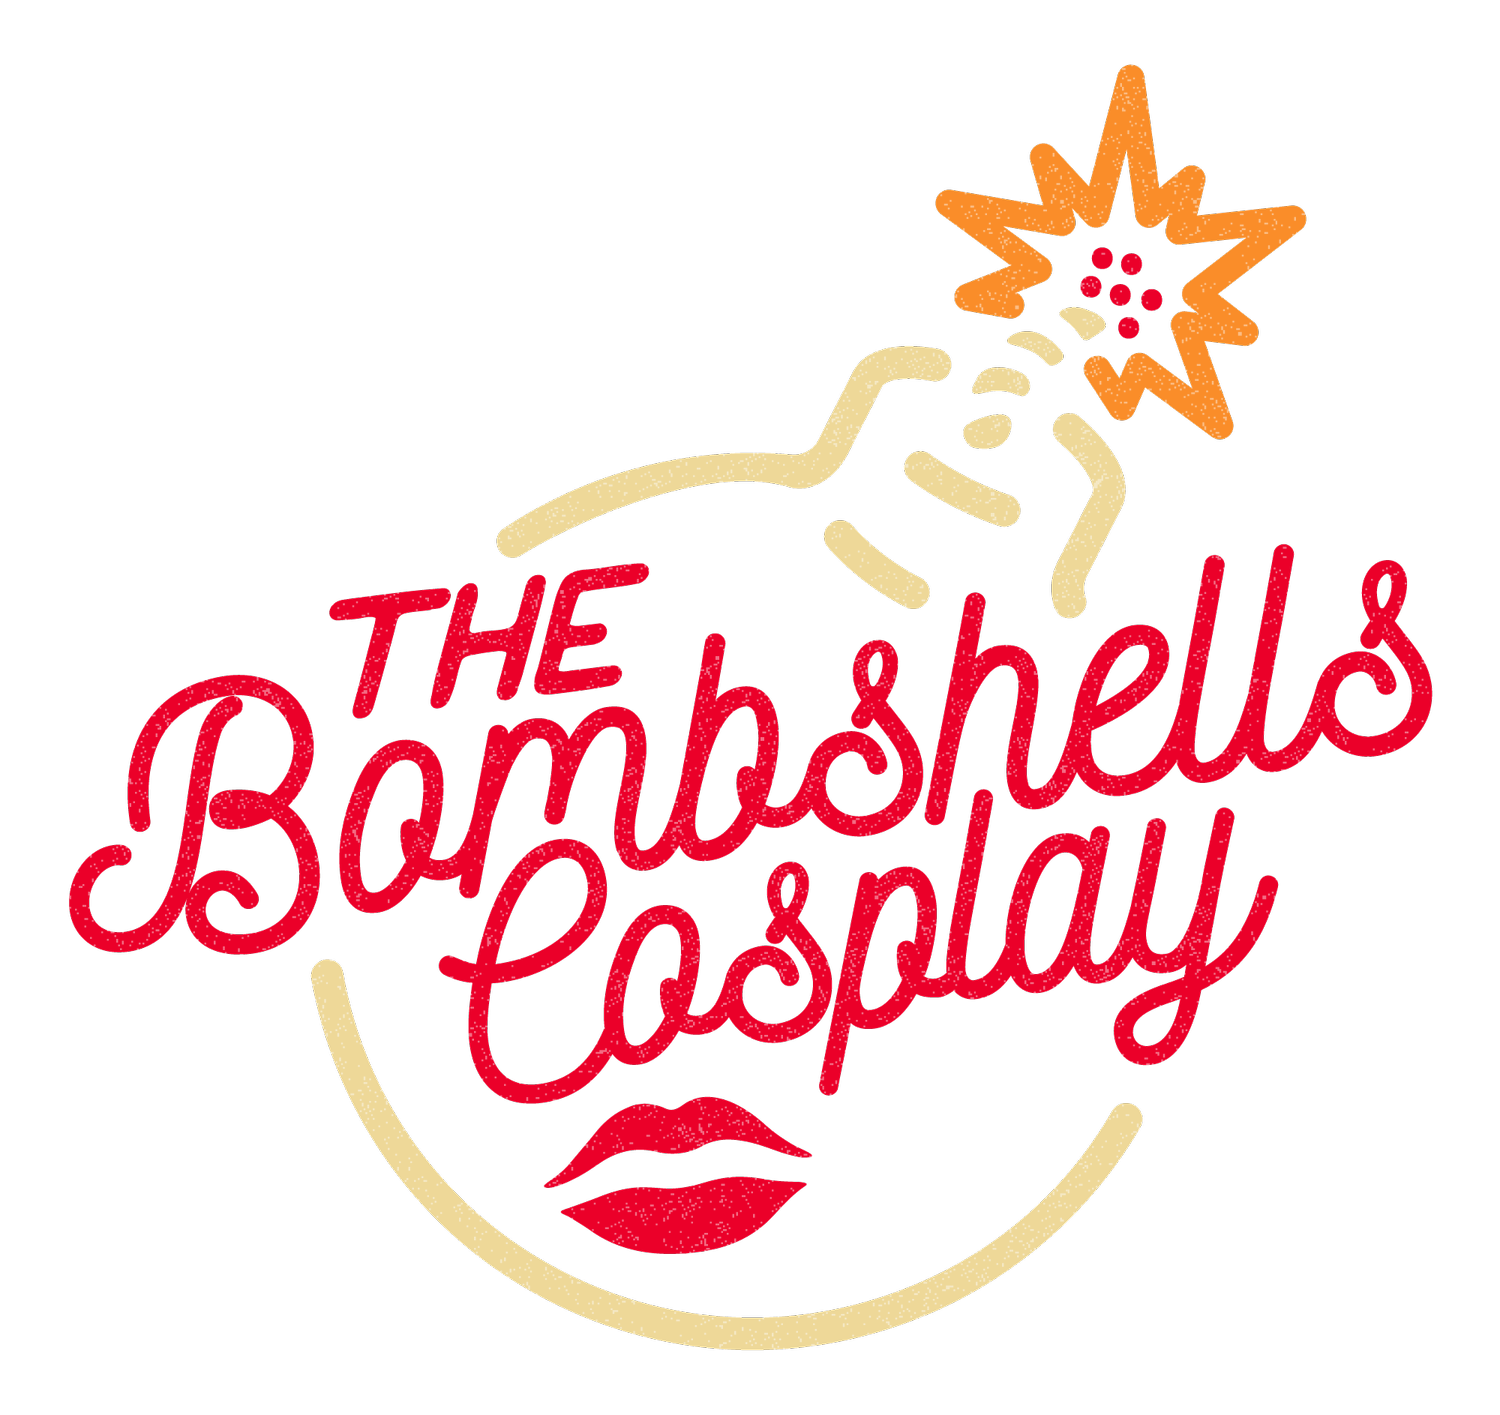 The Bombshells Cosplay